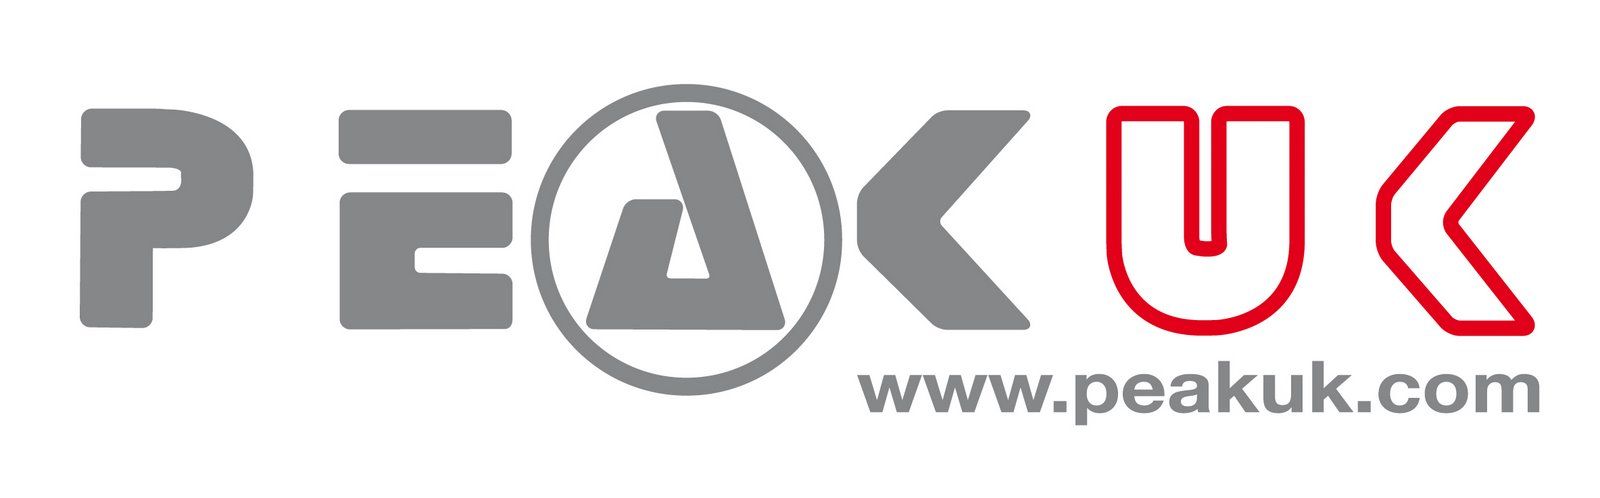 Peak UK Kayaking Co Ltd